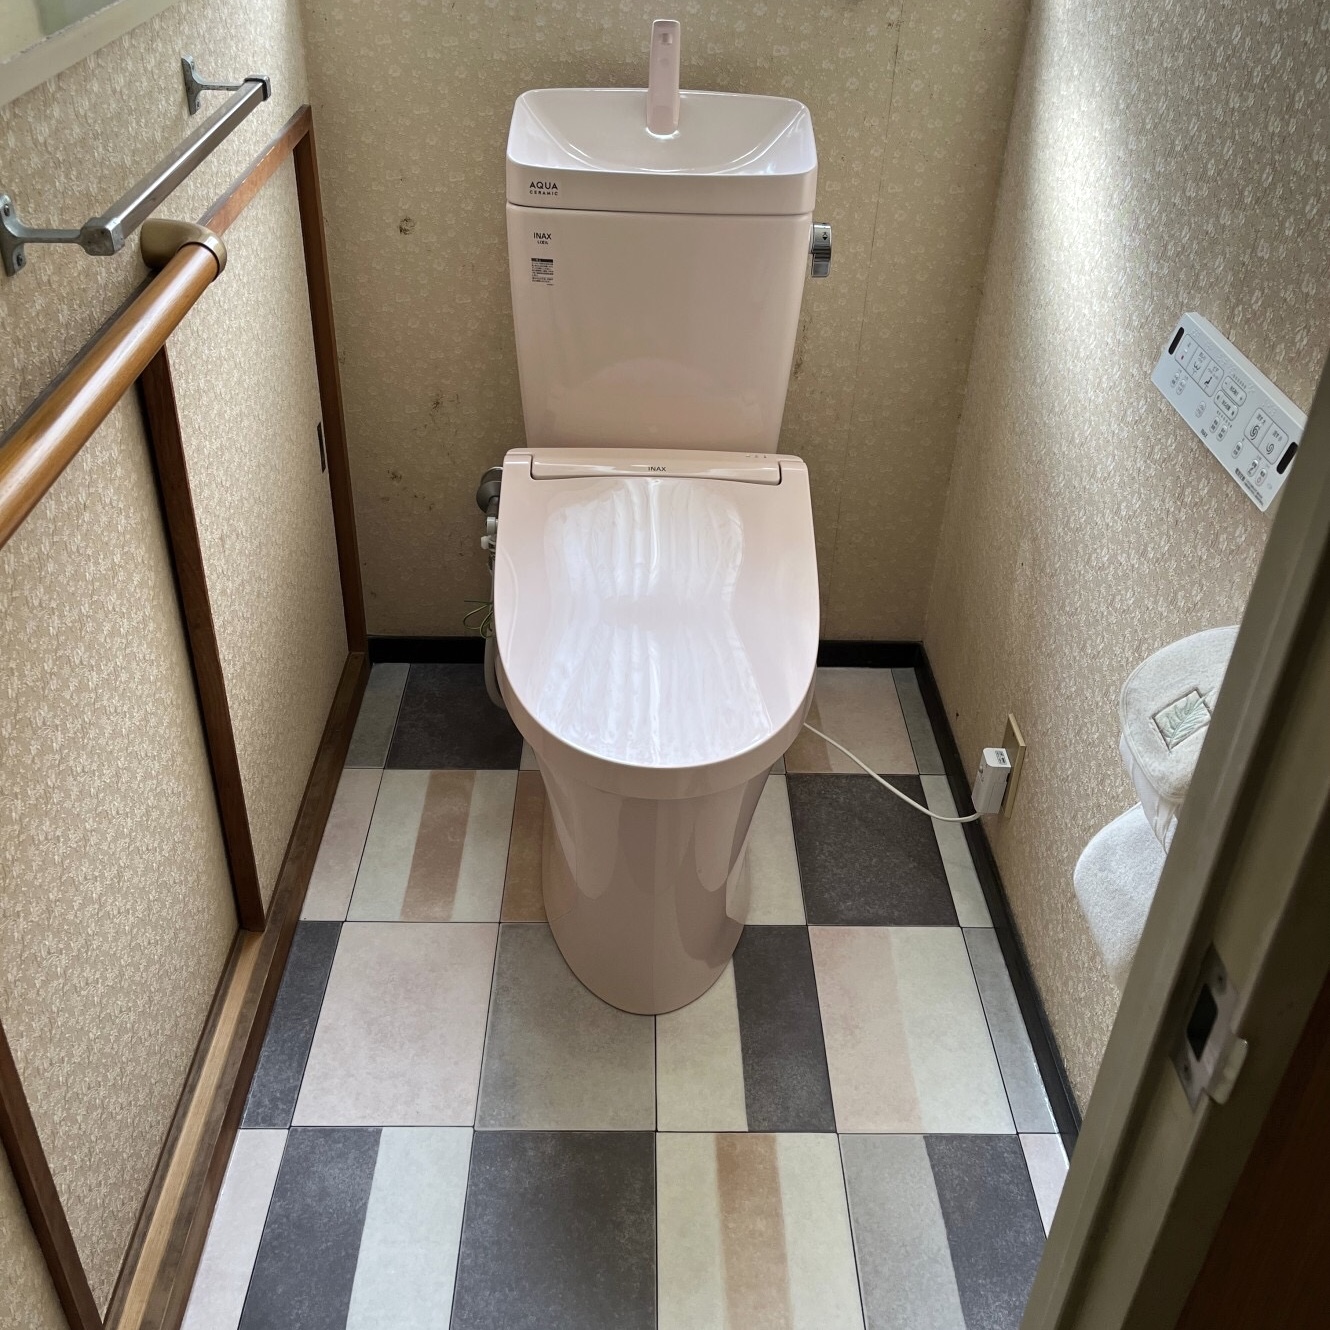 トイレ取替工事 アイキャッチ画像